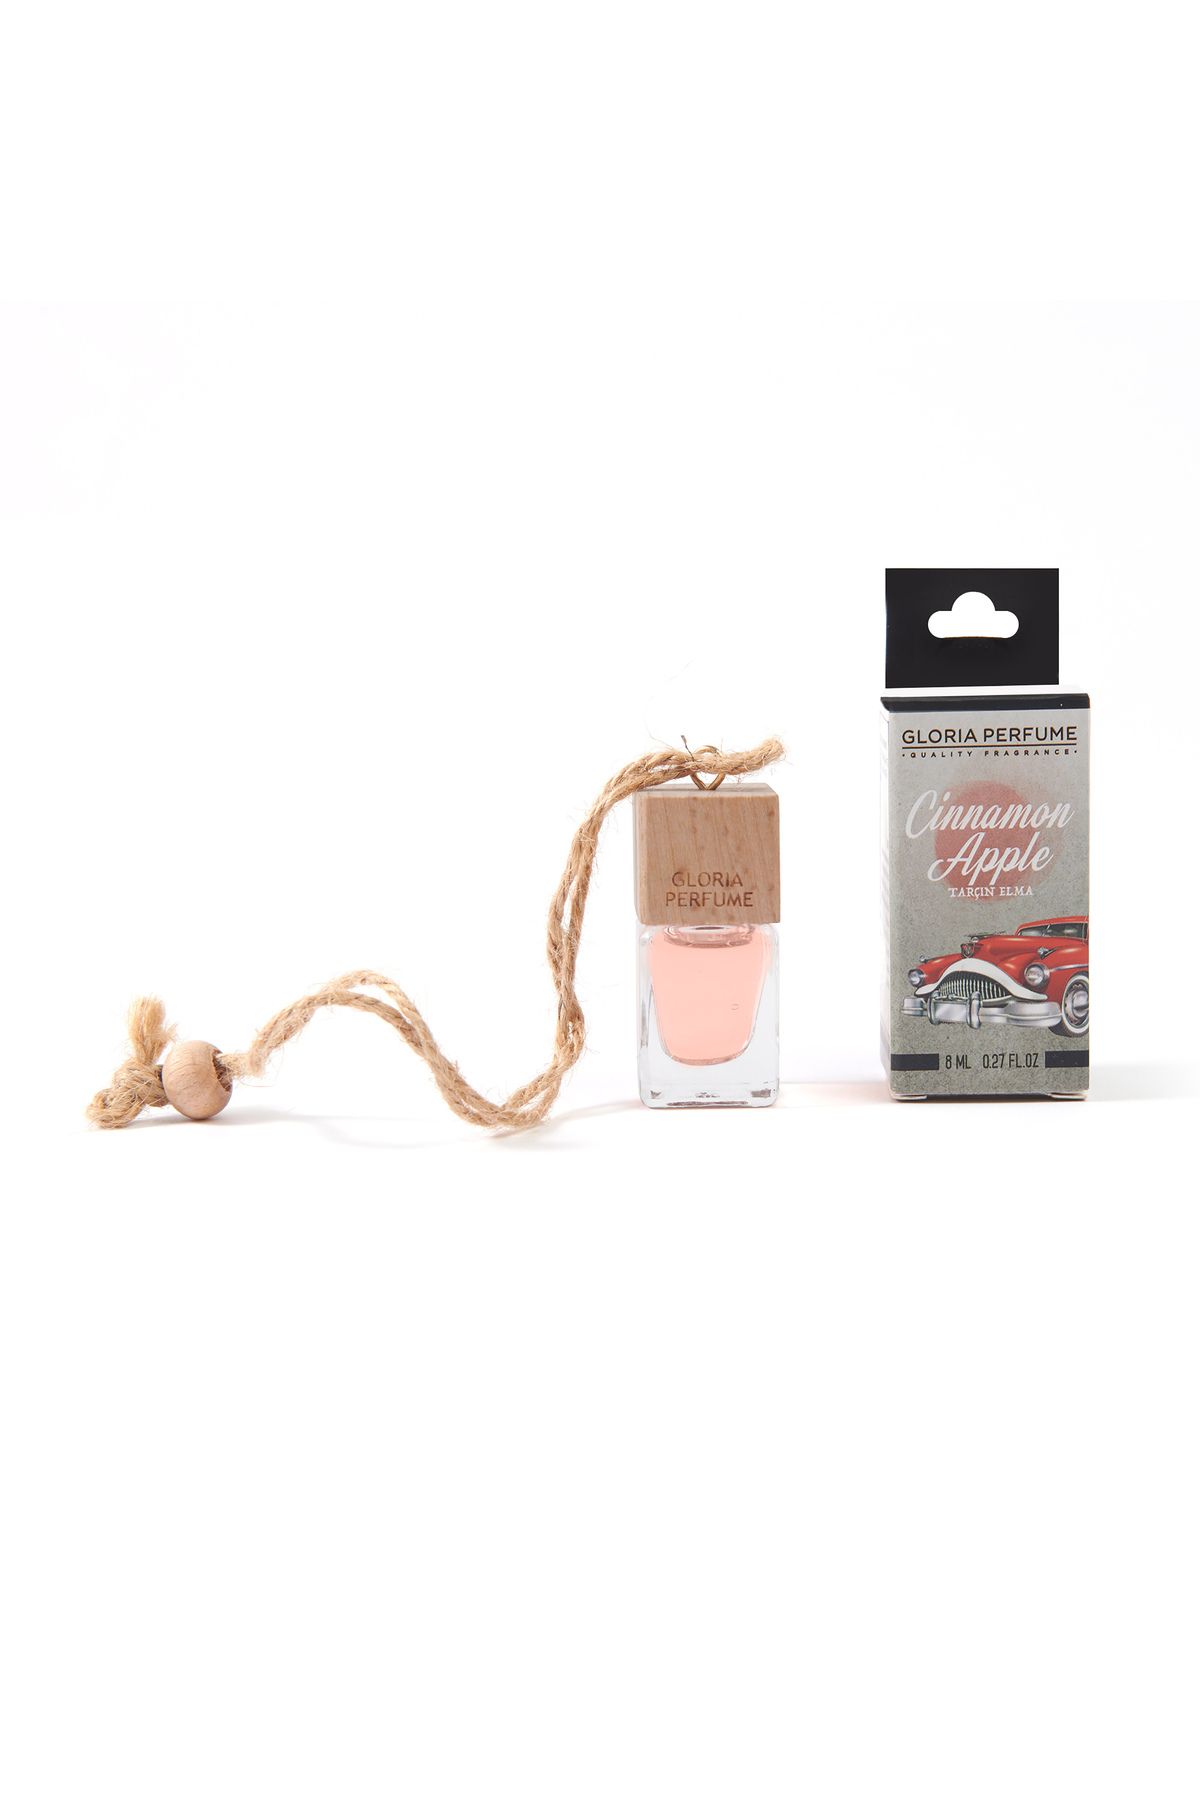 Gloria Perfume Cinnamon Apple Araba Kokusu - Kırmızı - 8 ml